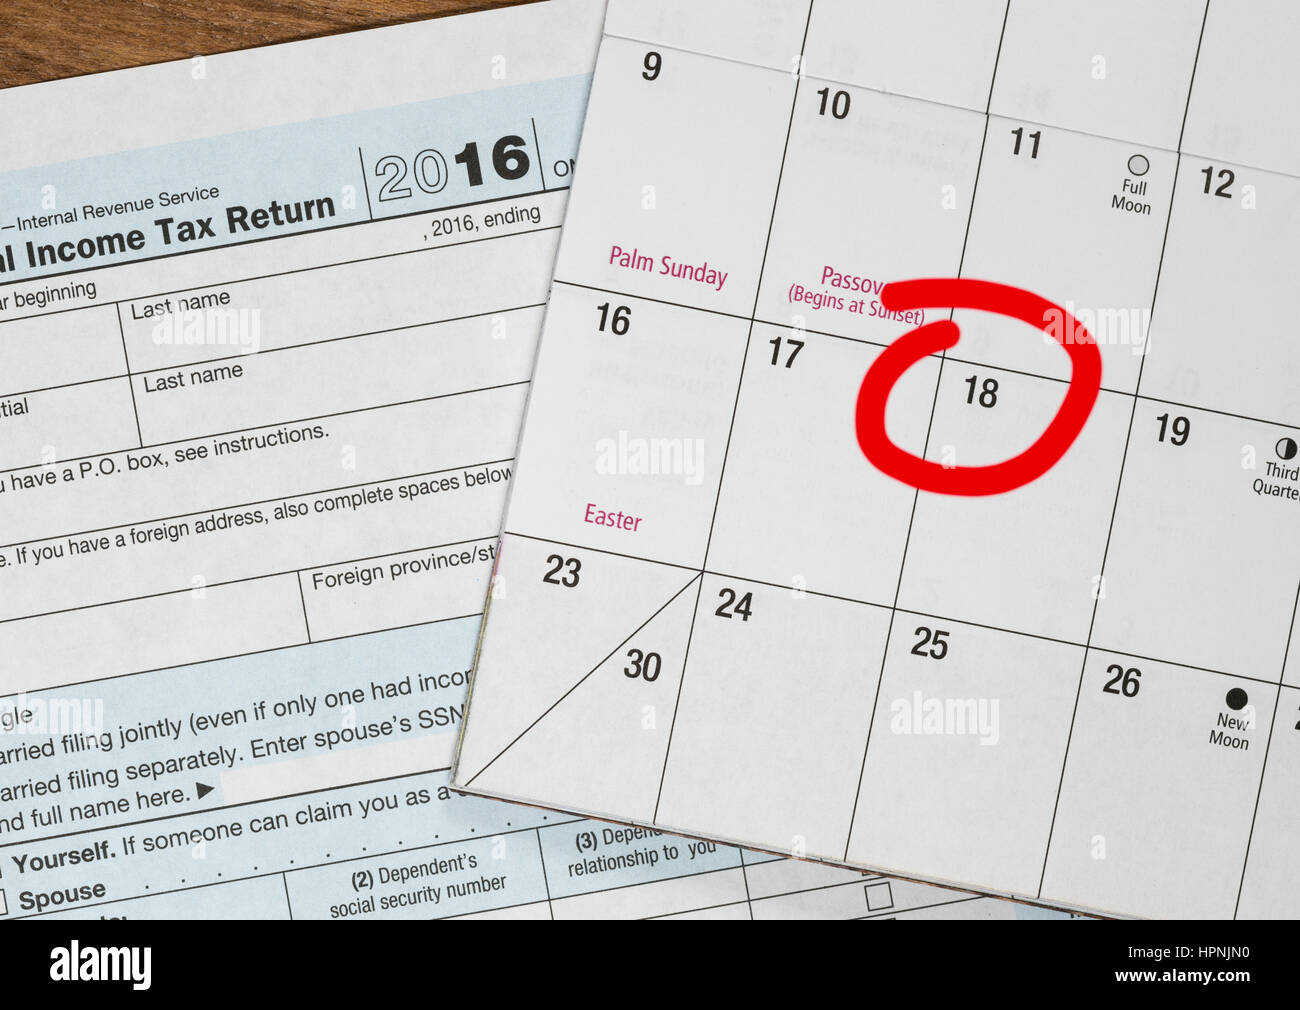 Calendrier sur le haut du formulaire 1040 Formulaire de déclaration de revenus pour l'année 2016 montrant tax day pour le dépôt est le 18 avril 2017 Banque D'Images